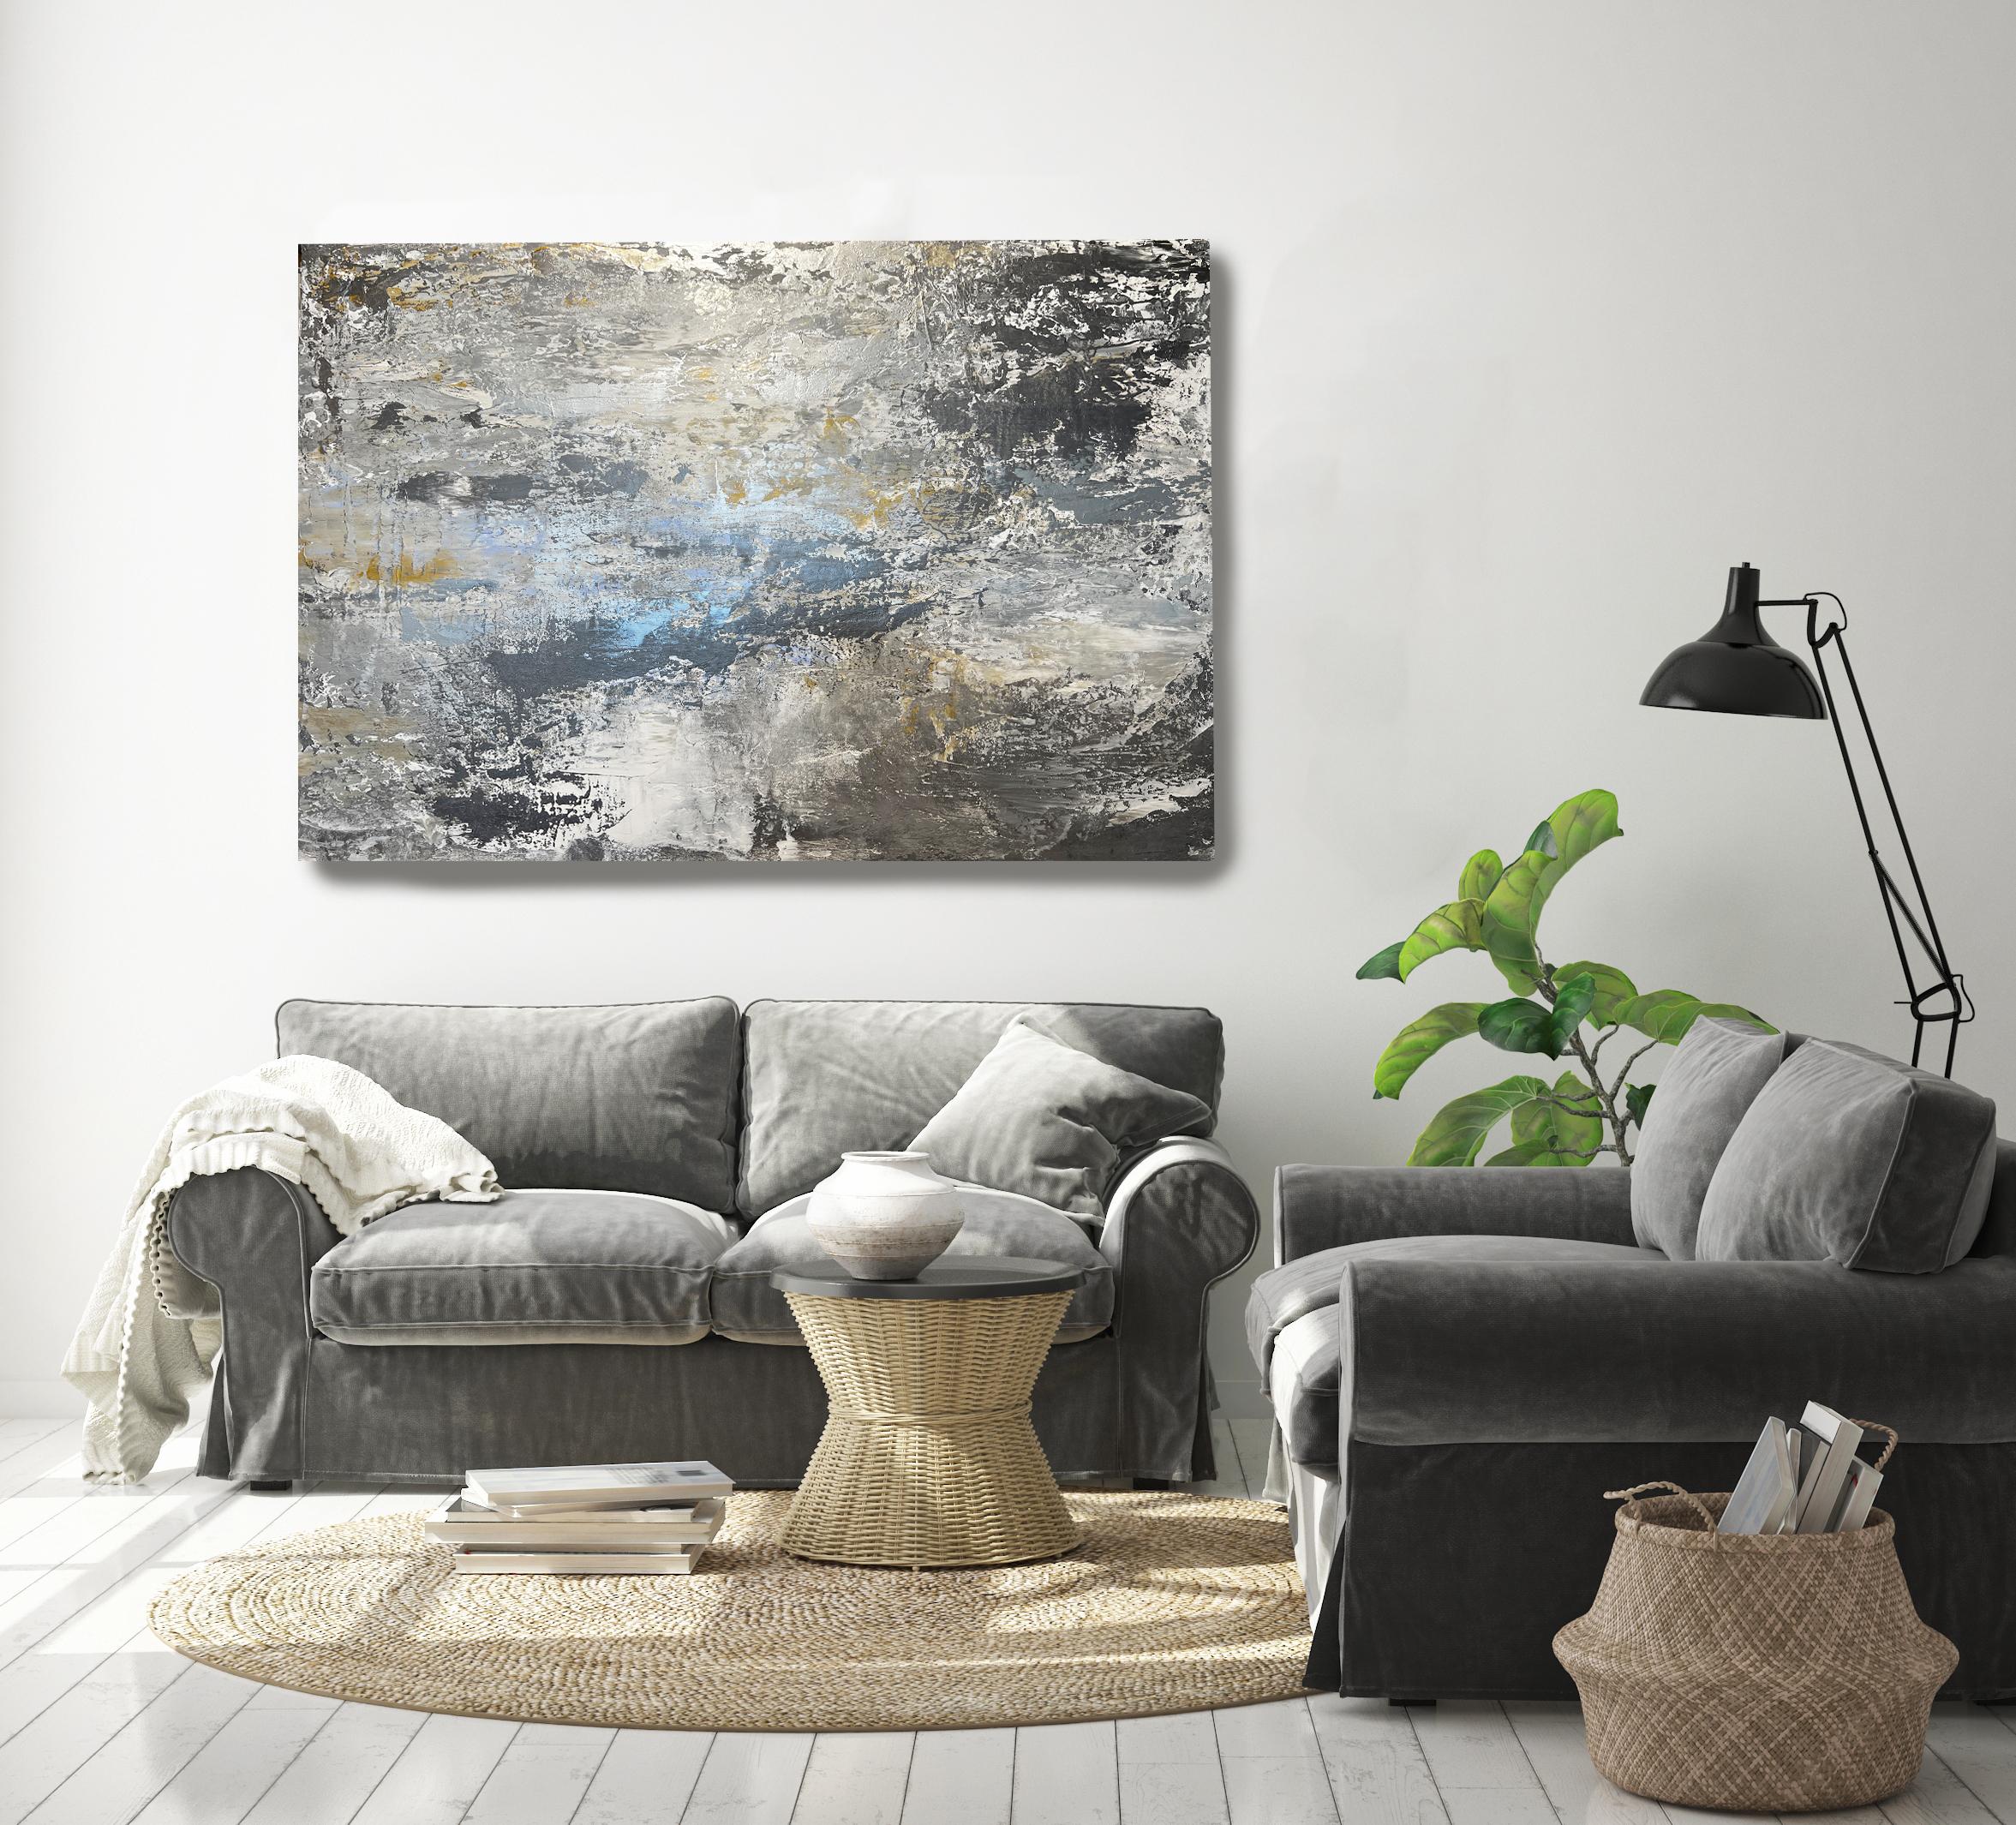 Irena Orlov Abstract Painting – Zeitgenössisches Gemälde auf Leinwand in Silber, Grau, Gold und Blau, Silber, Ozean 36x48" 